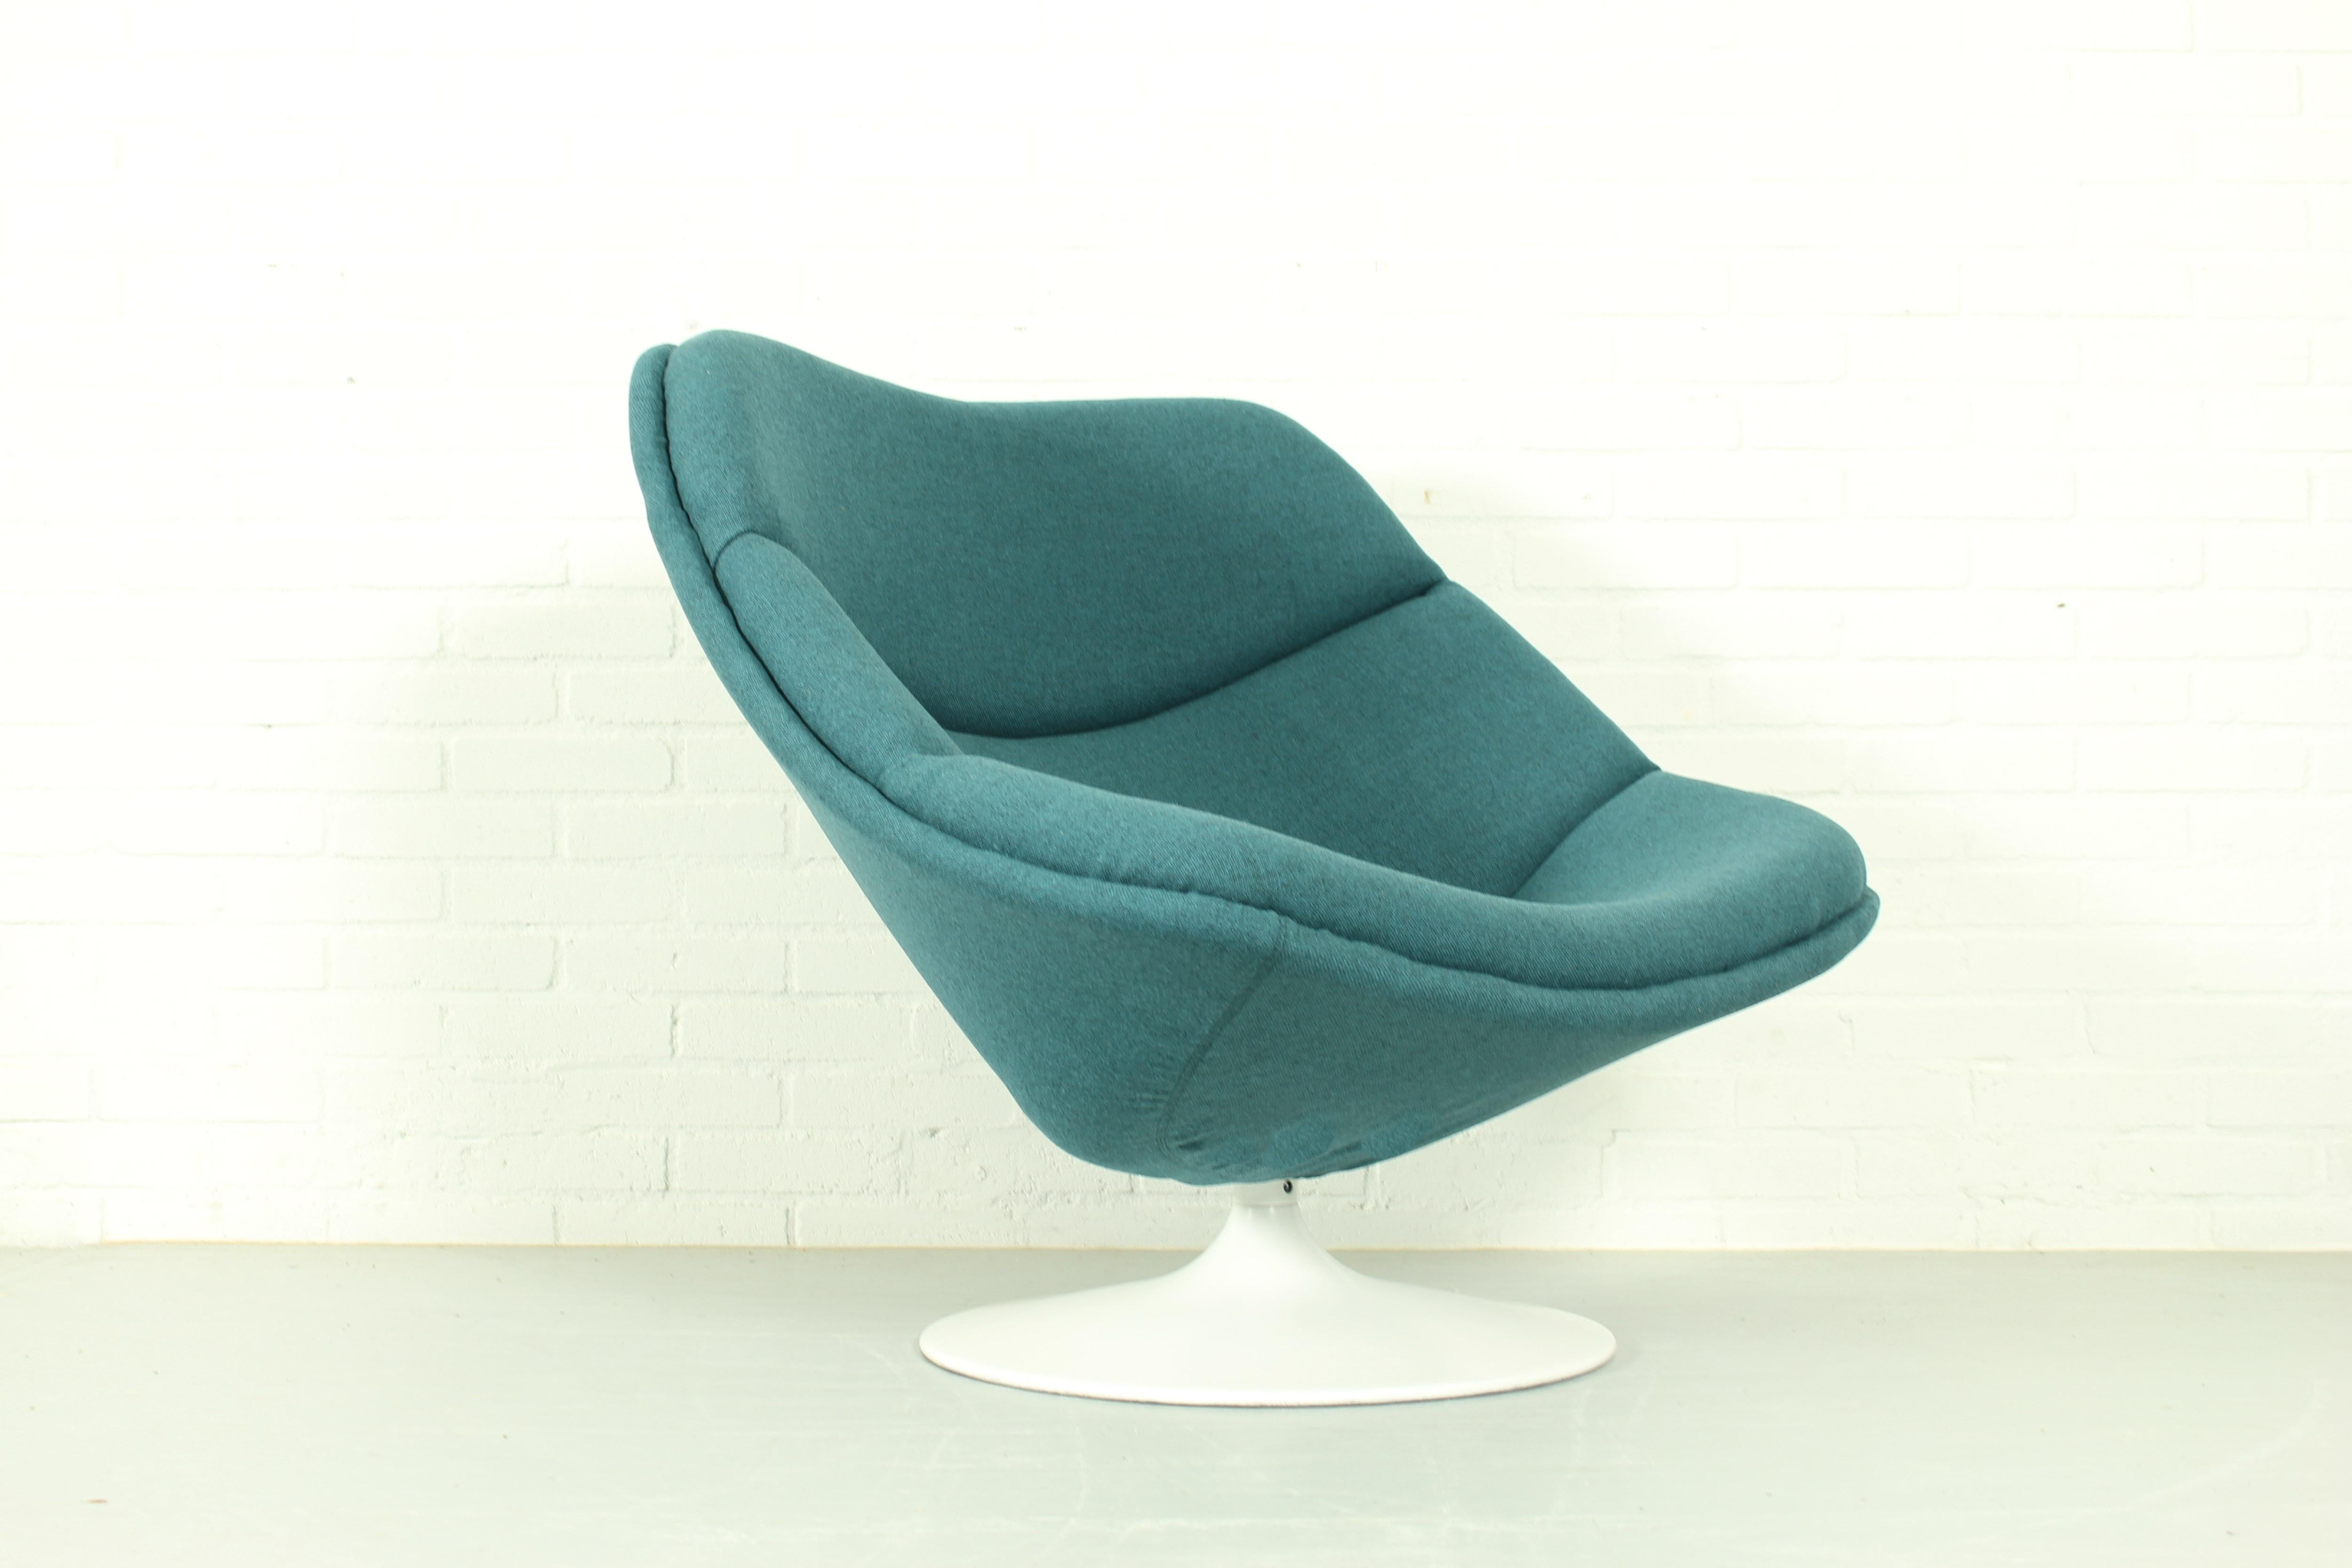 Chaise longue pivotante F557 originale de Pierre Paulin pour Artifort dans les années 1960. Cette chaise a une base en acier et est retapissée en tissu bleu-vert Tonica de Kvadrat. Précurseur de la chaise globe, cette chaise n'est plus fabriquée et